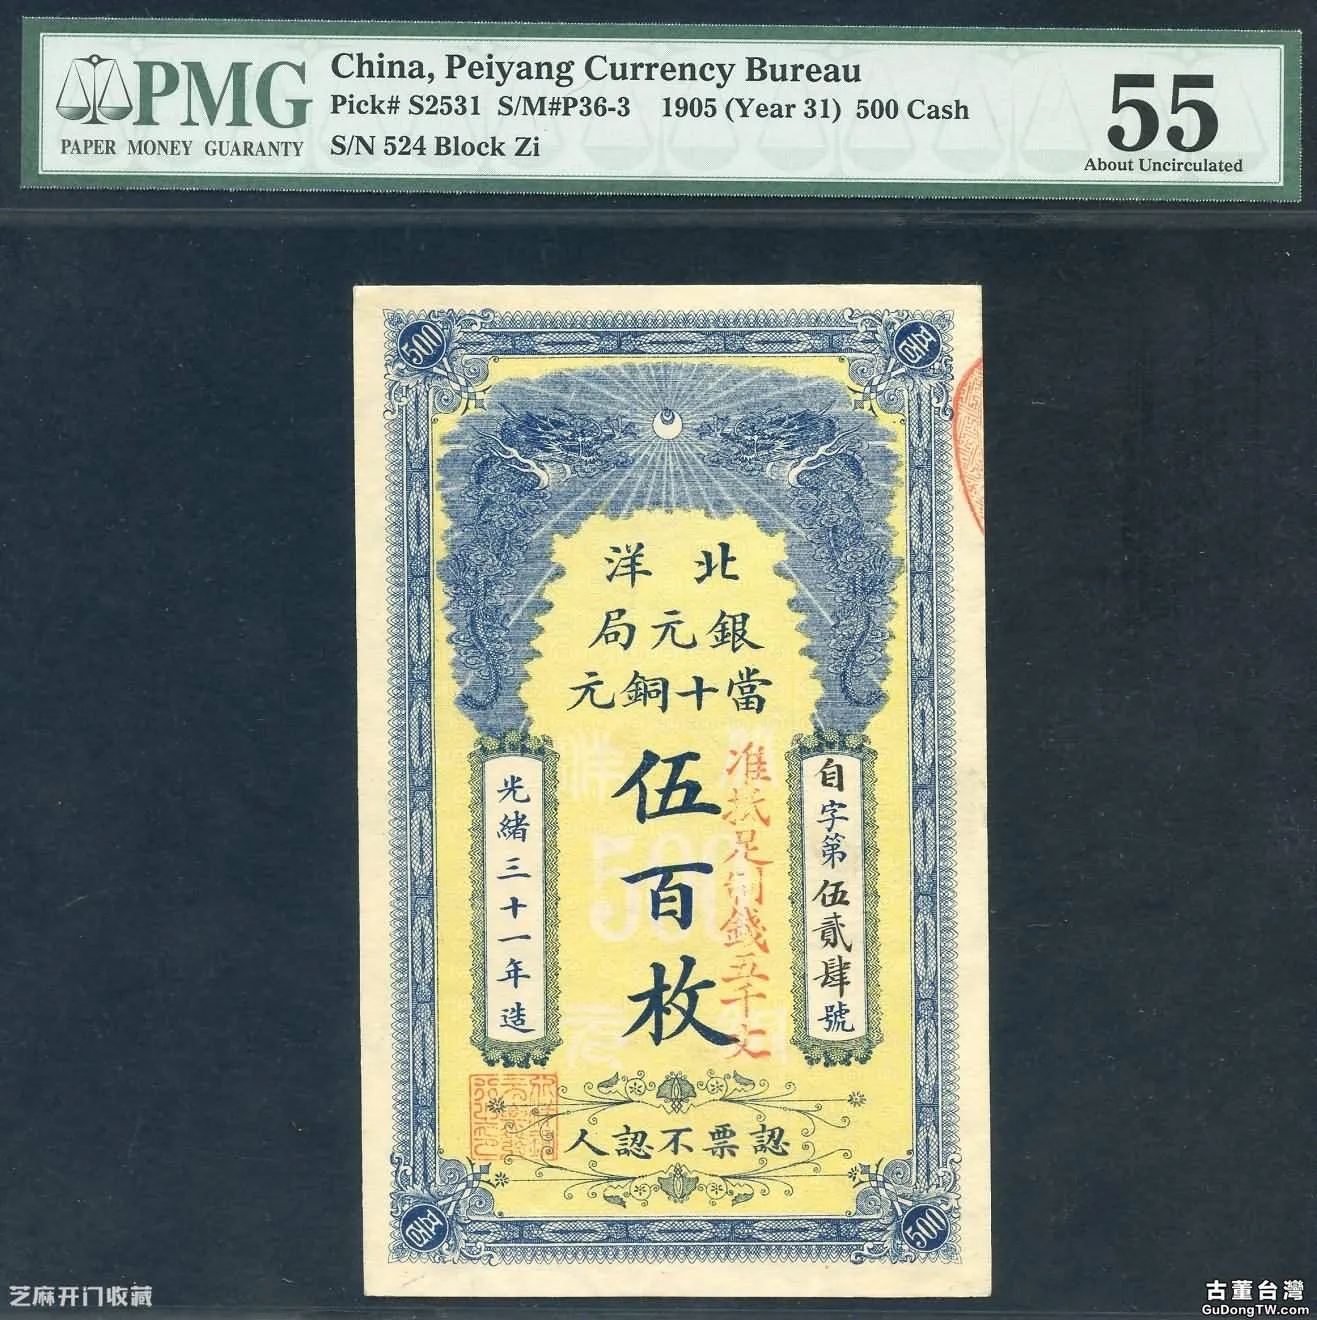 清朝紙幣上的頭像為什麼還有載振的頭像